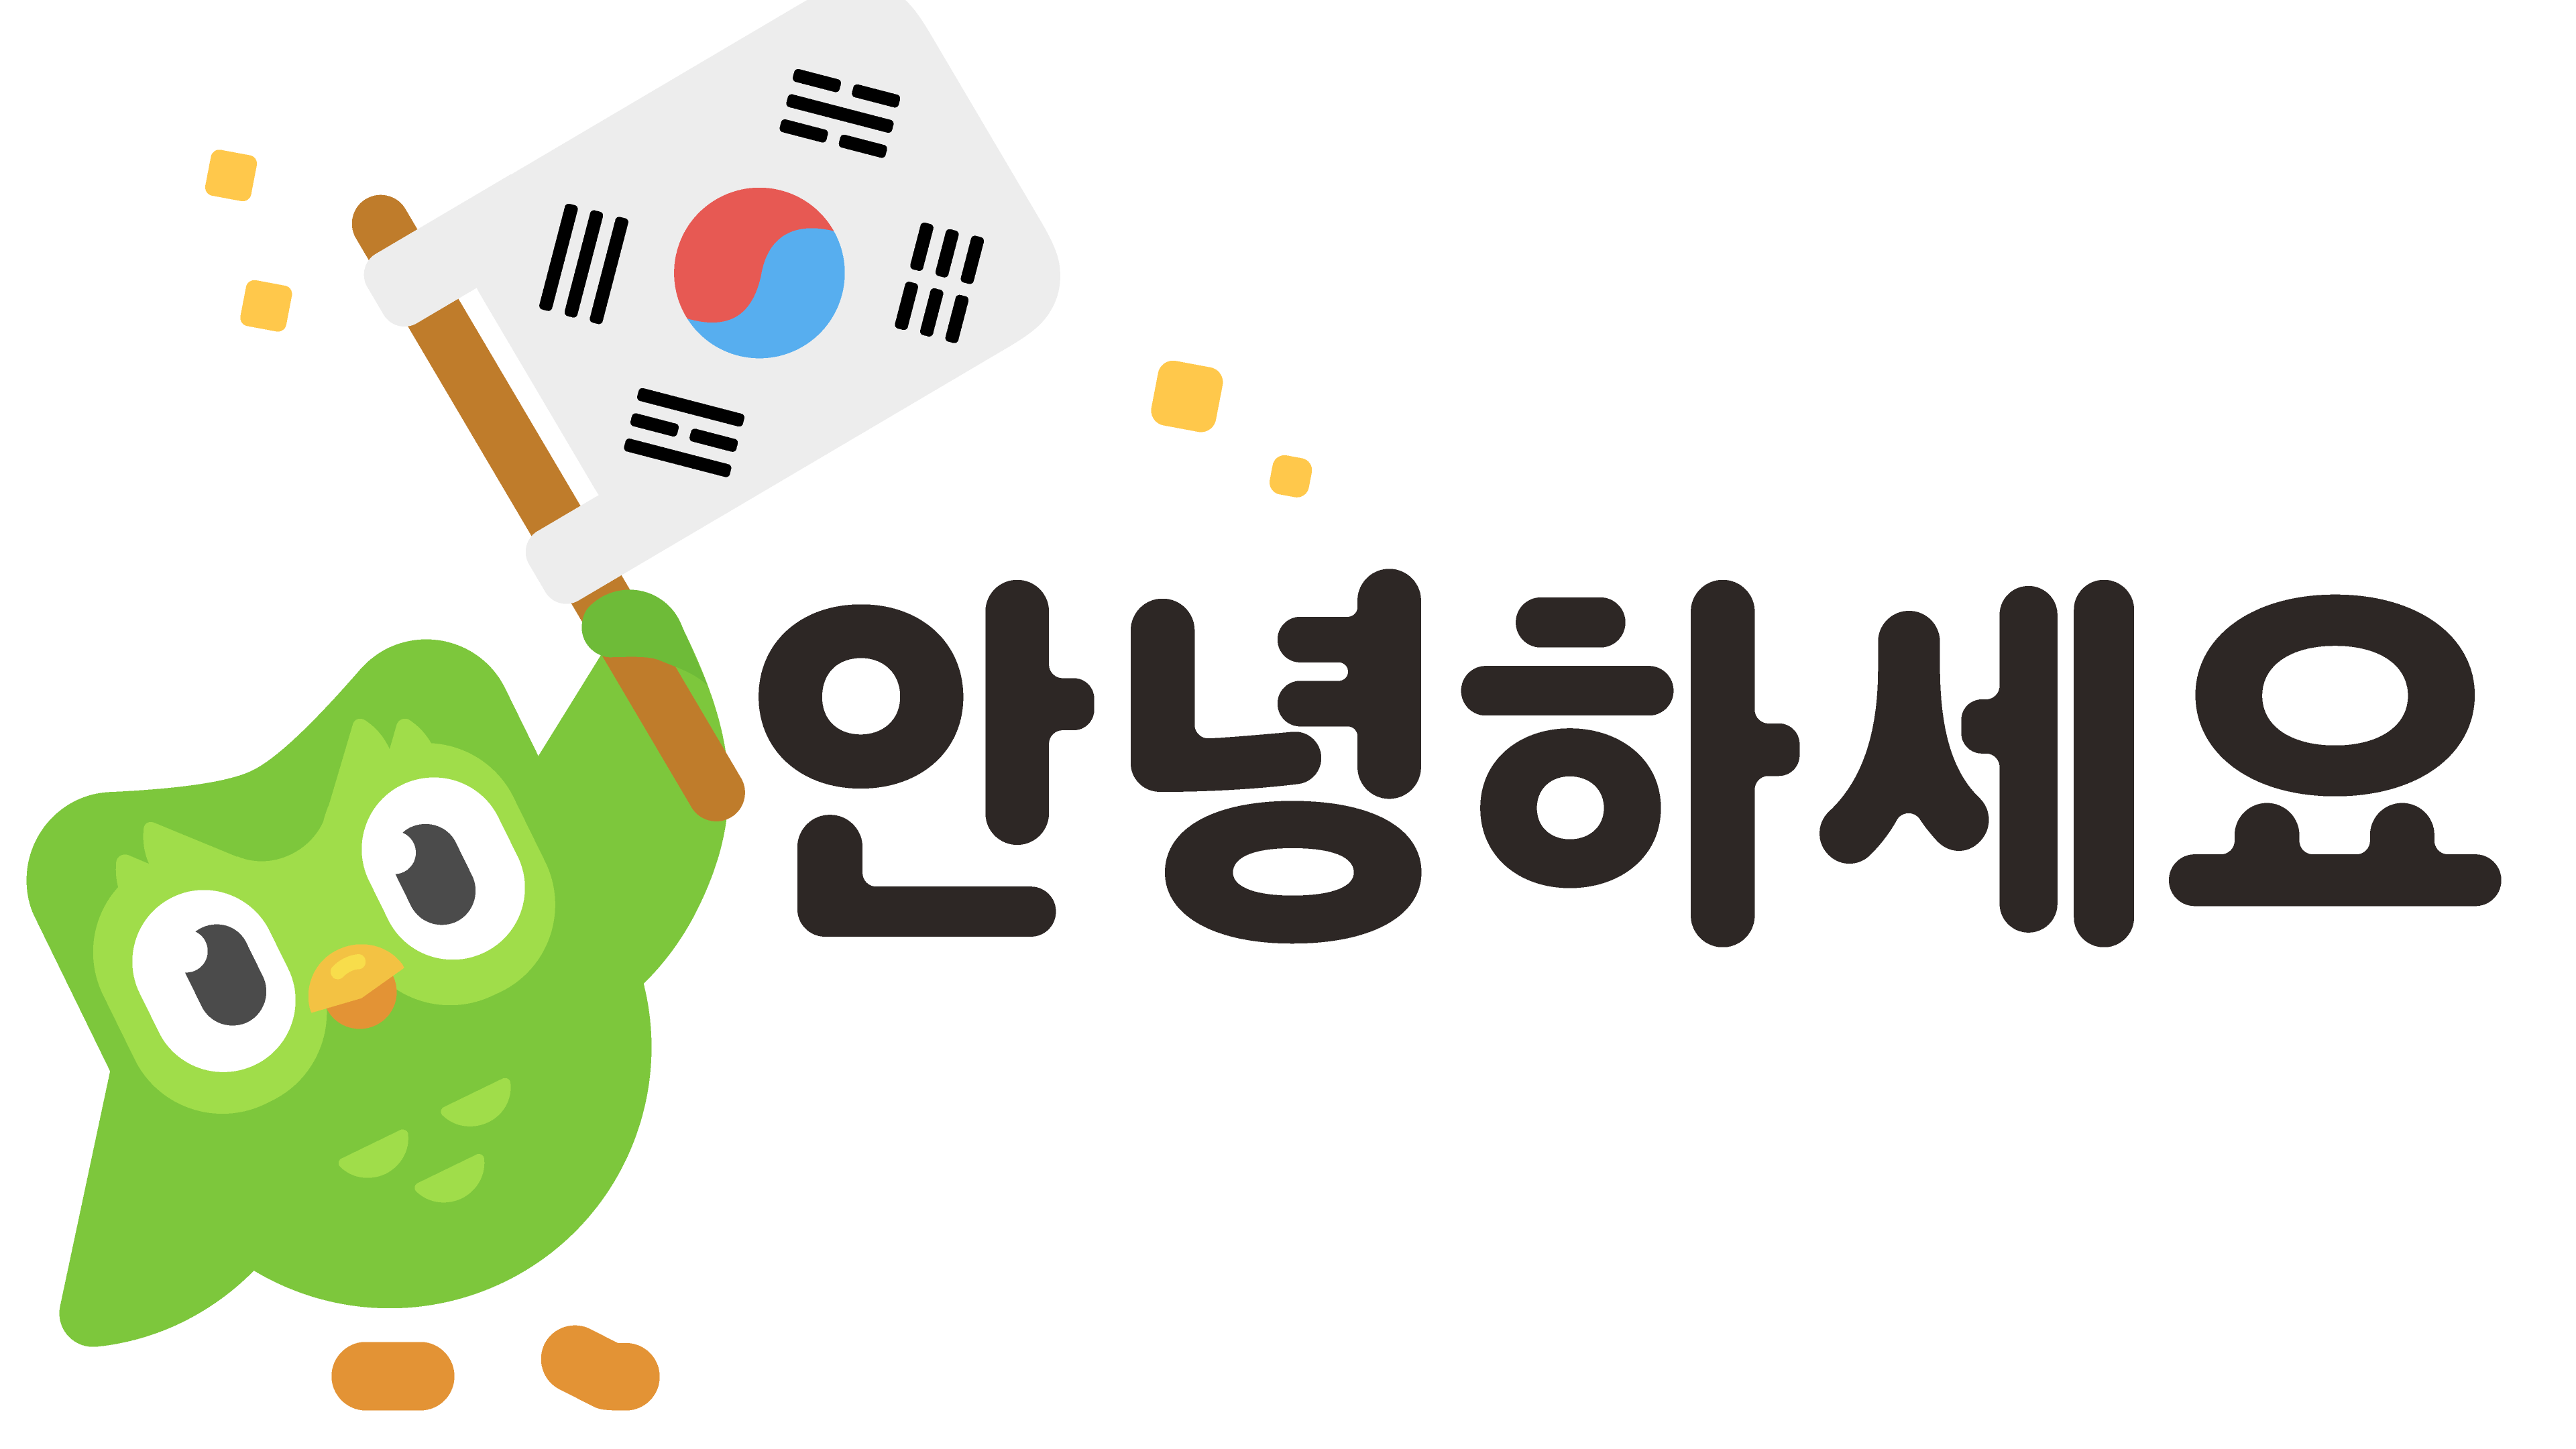 duolingo 韓国語